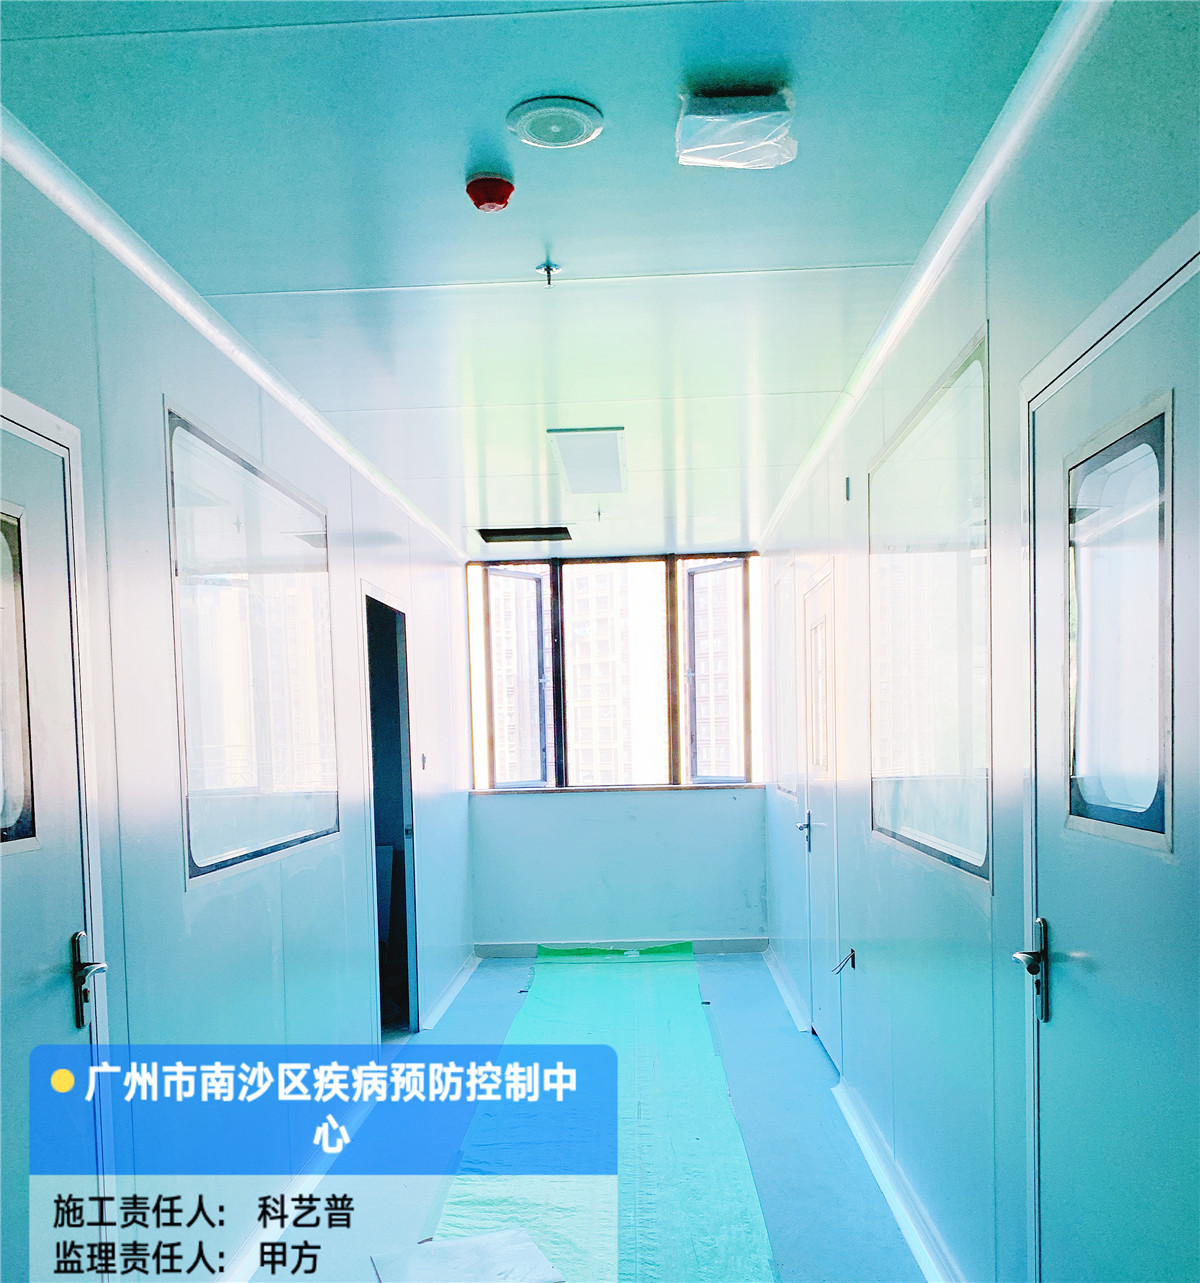 广州市南沙区疾病预防控制中心实验室工程